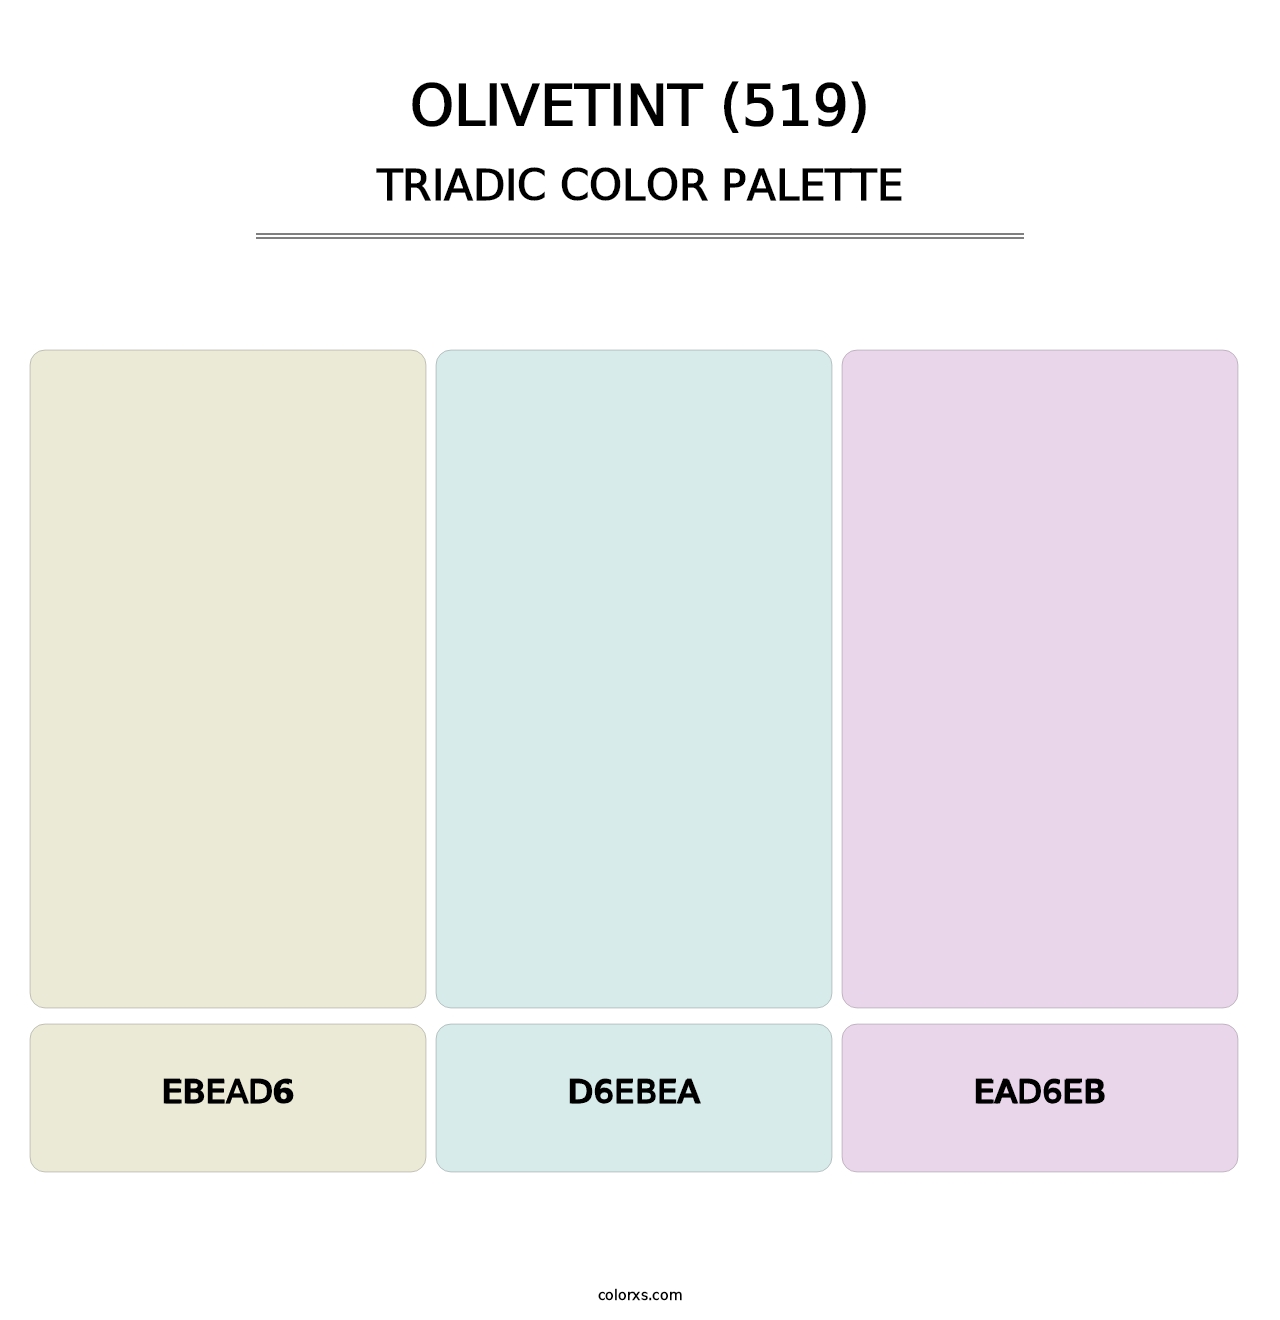 Olivetint (519) - Triadic Color Palette